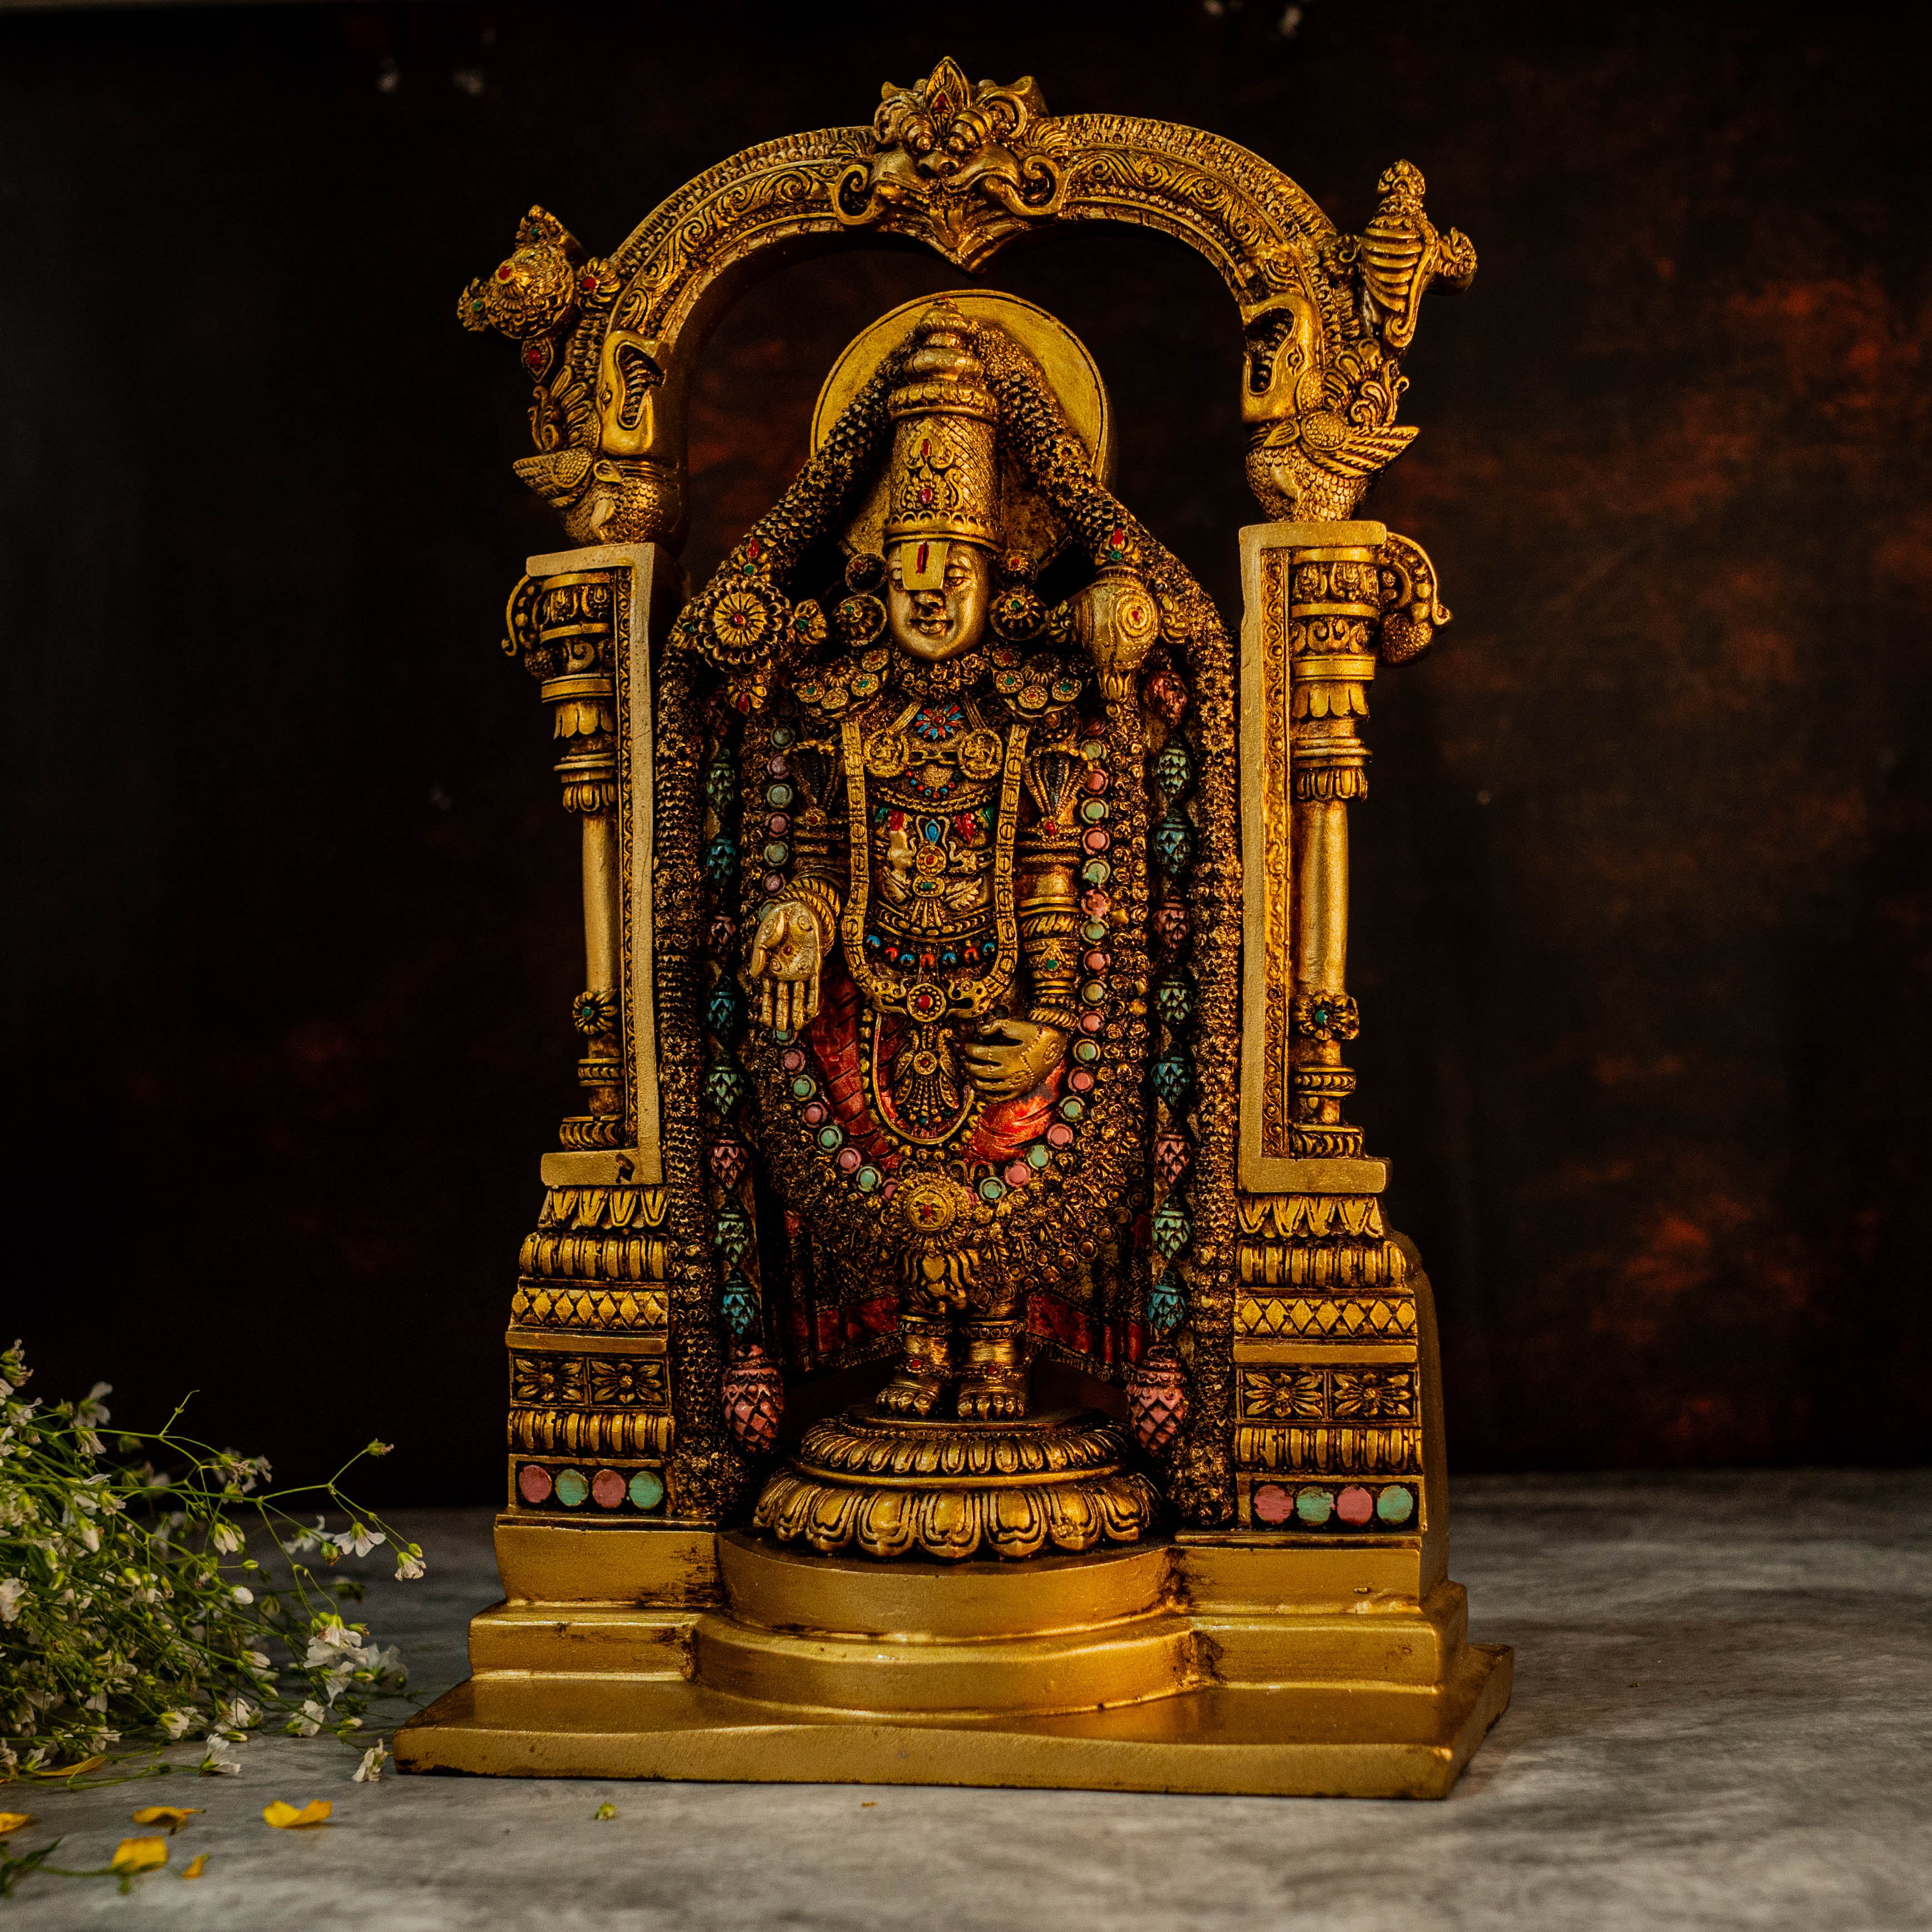 15" Tirupati Balaji In Marble Dust